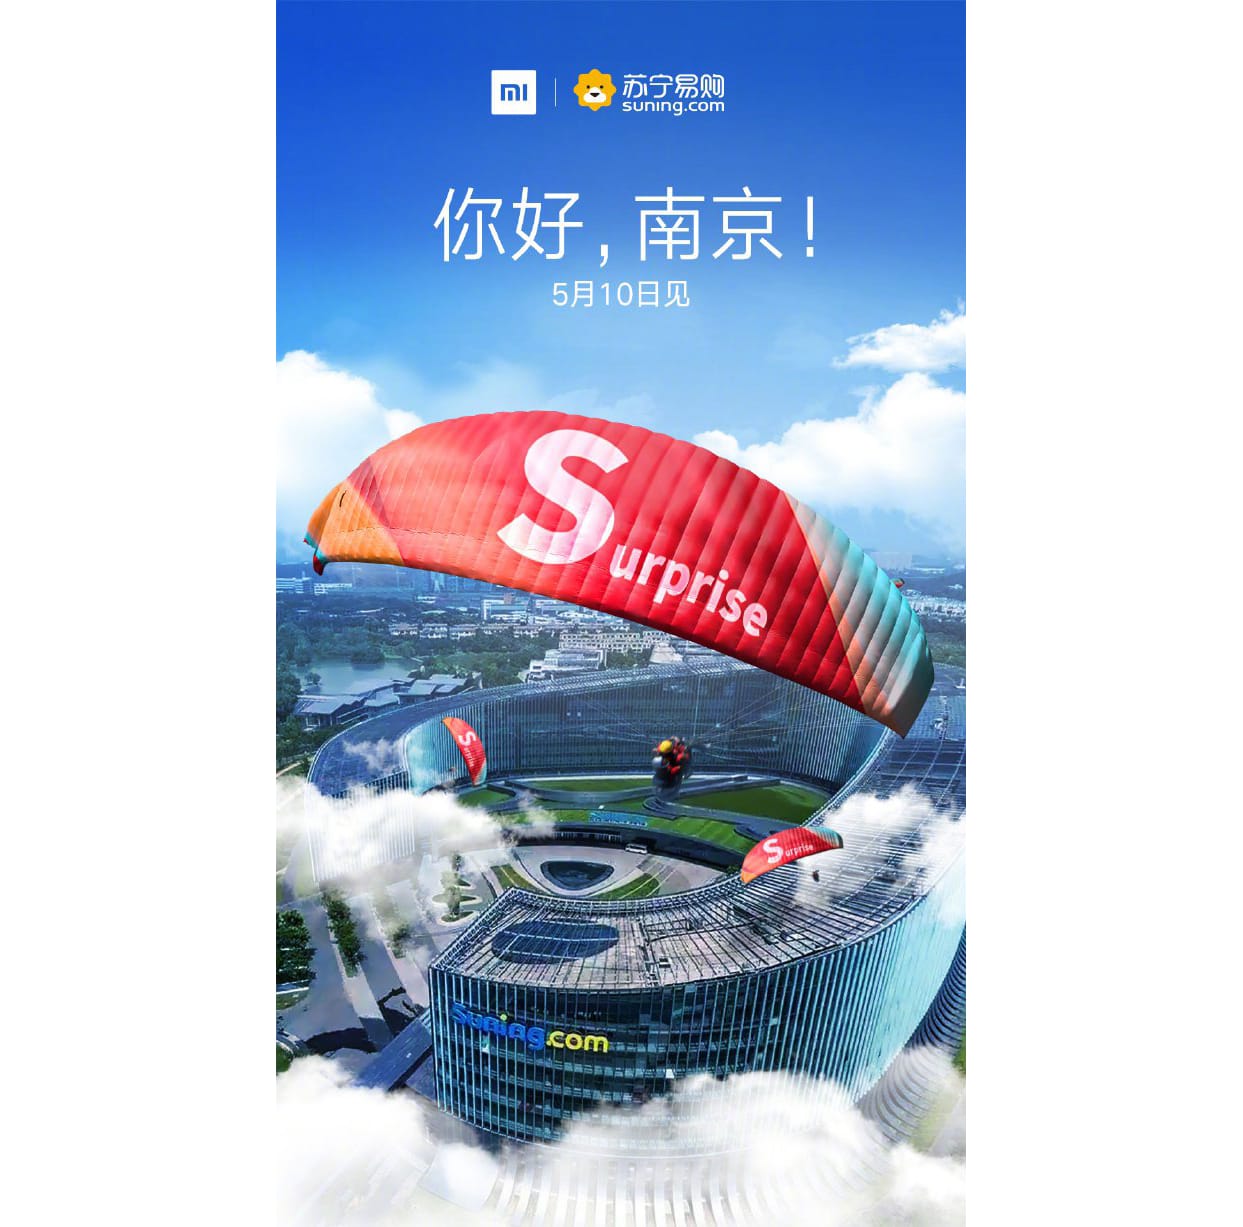 Официальный анонс нового Xiaomi Redmi S2 состоится 10 мая